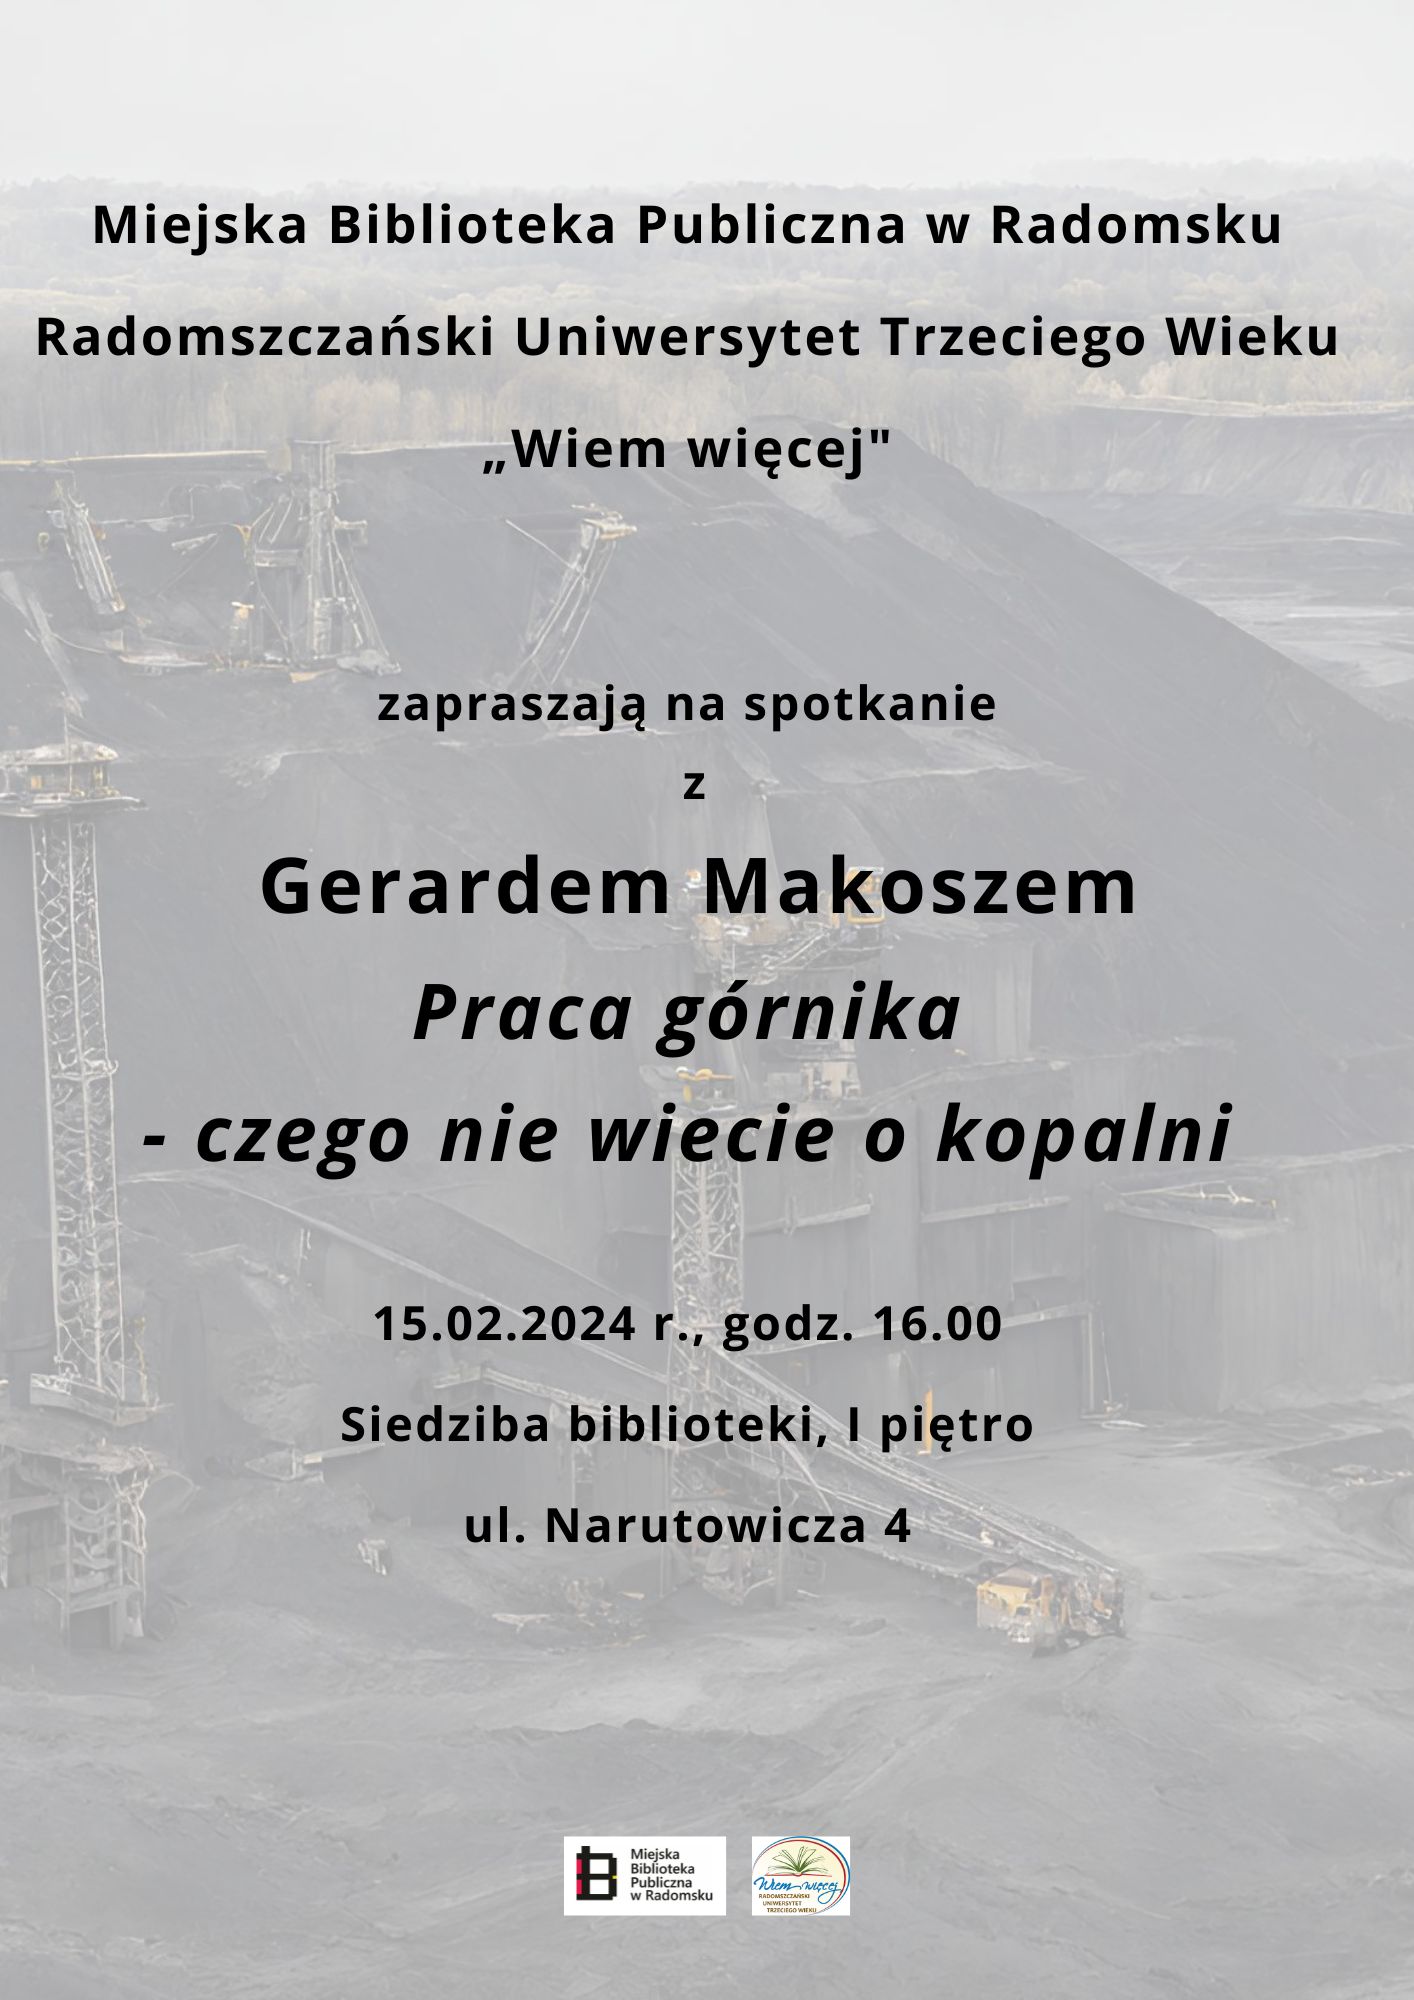 Spotkanie z Gerardem Makoszem Praca górnika czego nie wiecie o kopalni 15.02